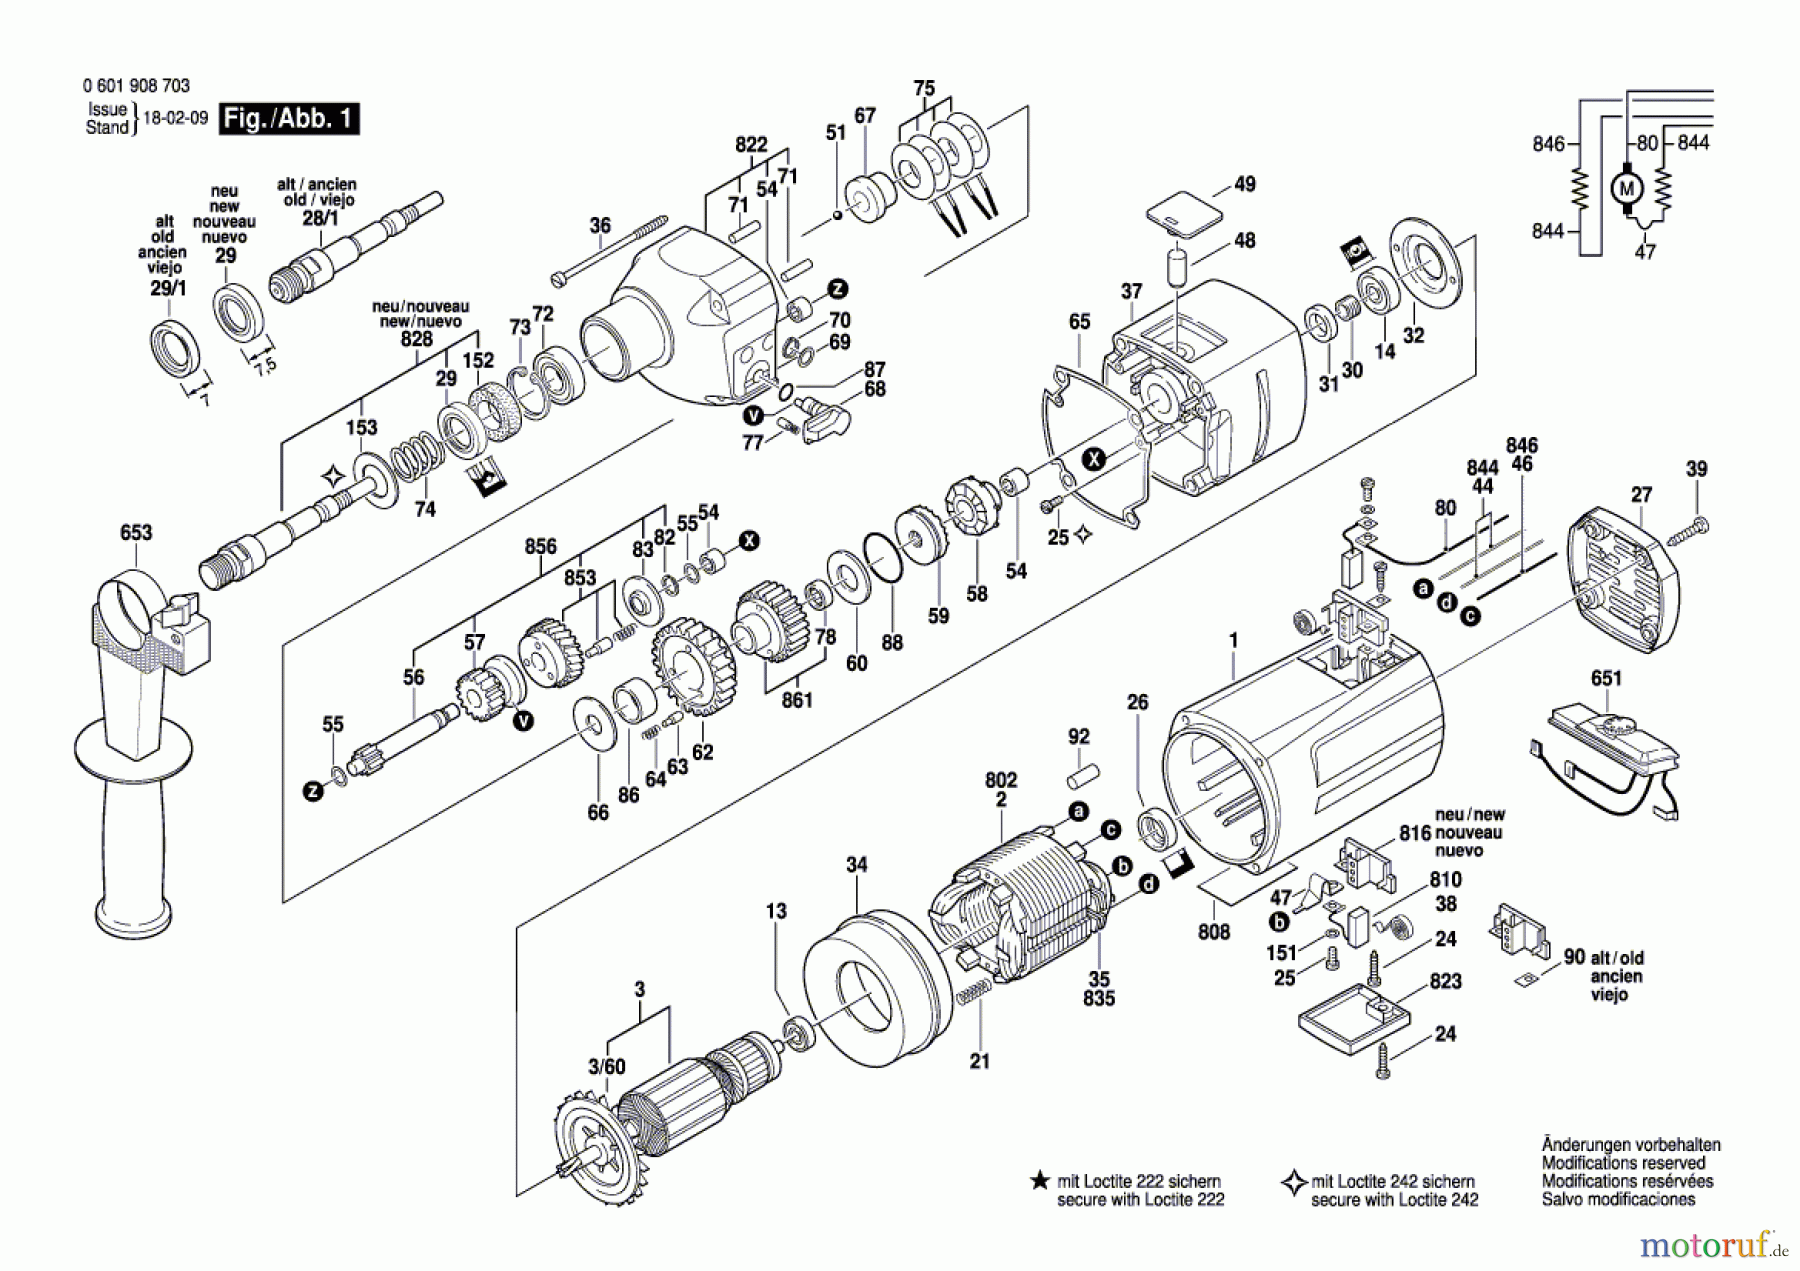  Bosch Werkzeug Anbaumotor GR.76 Seite 1